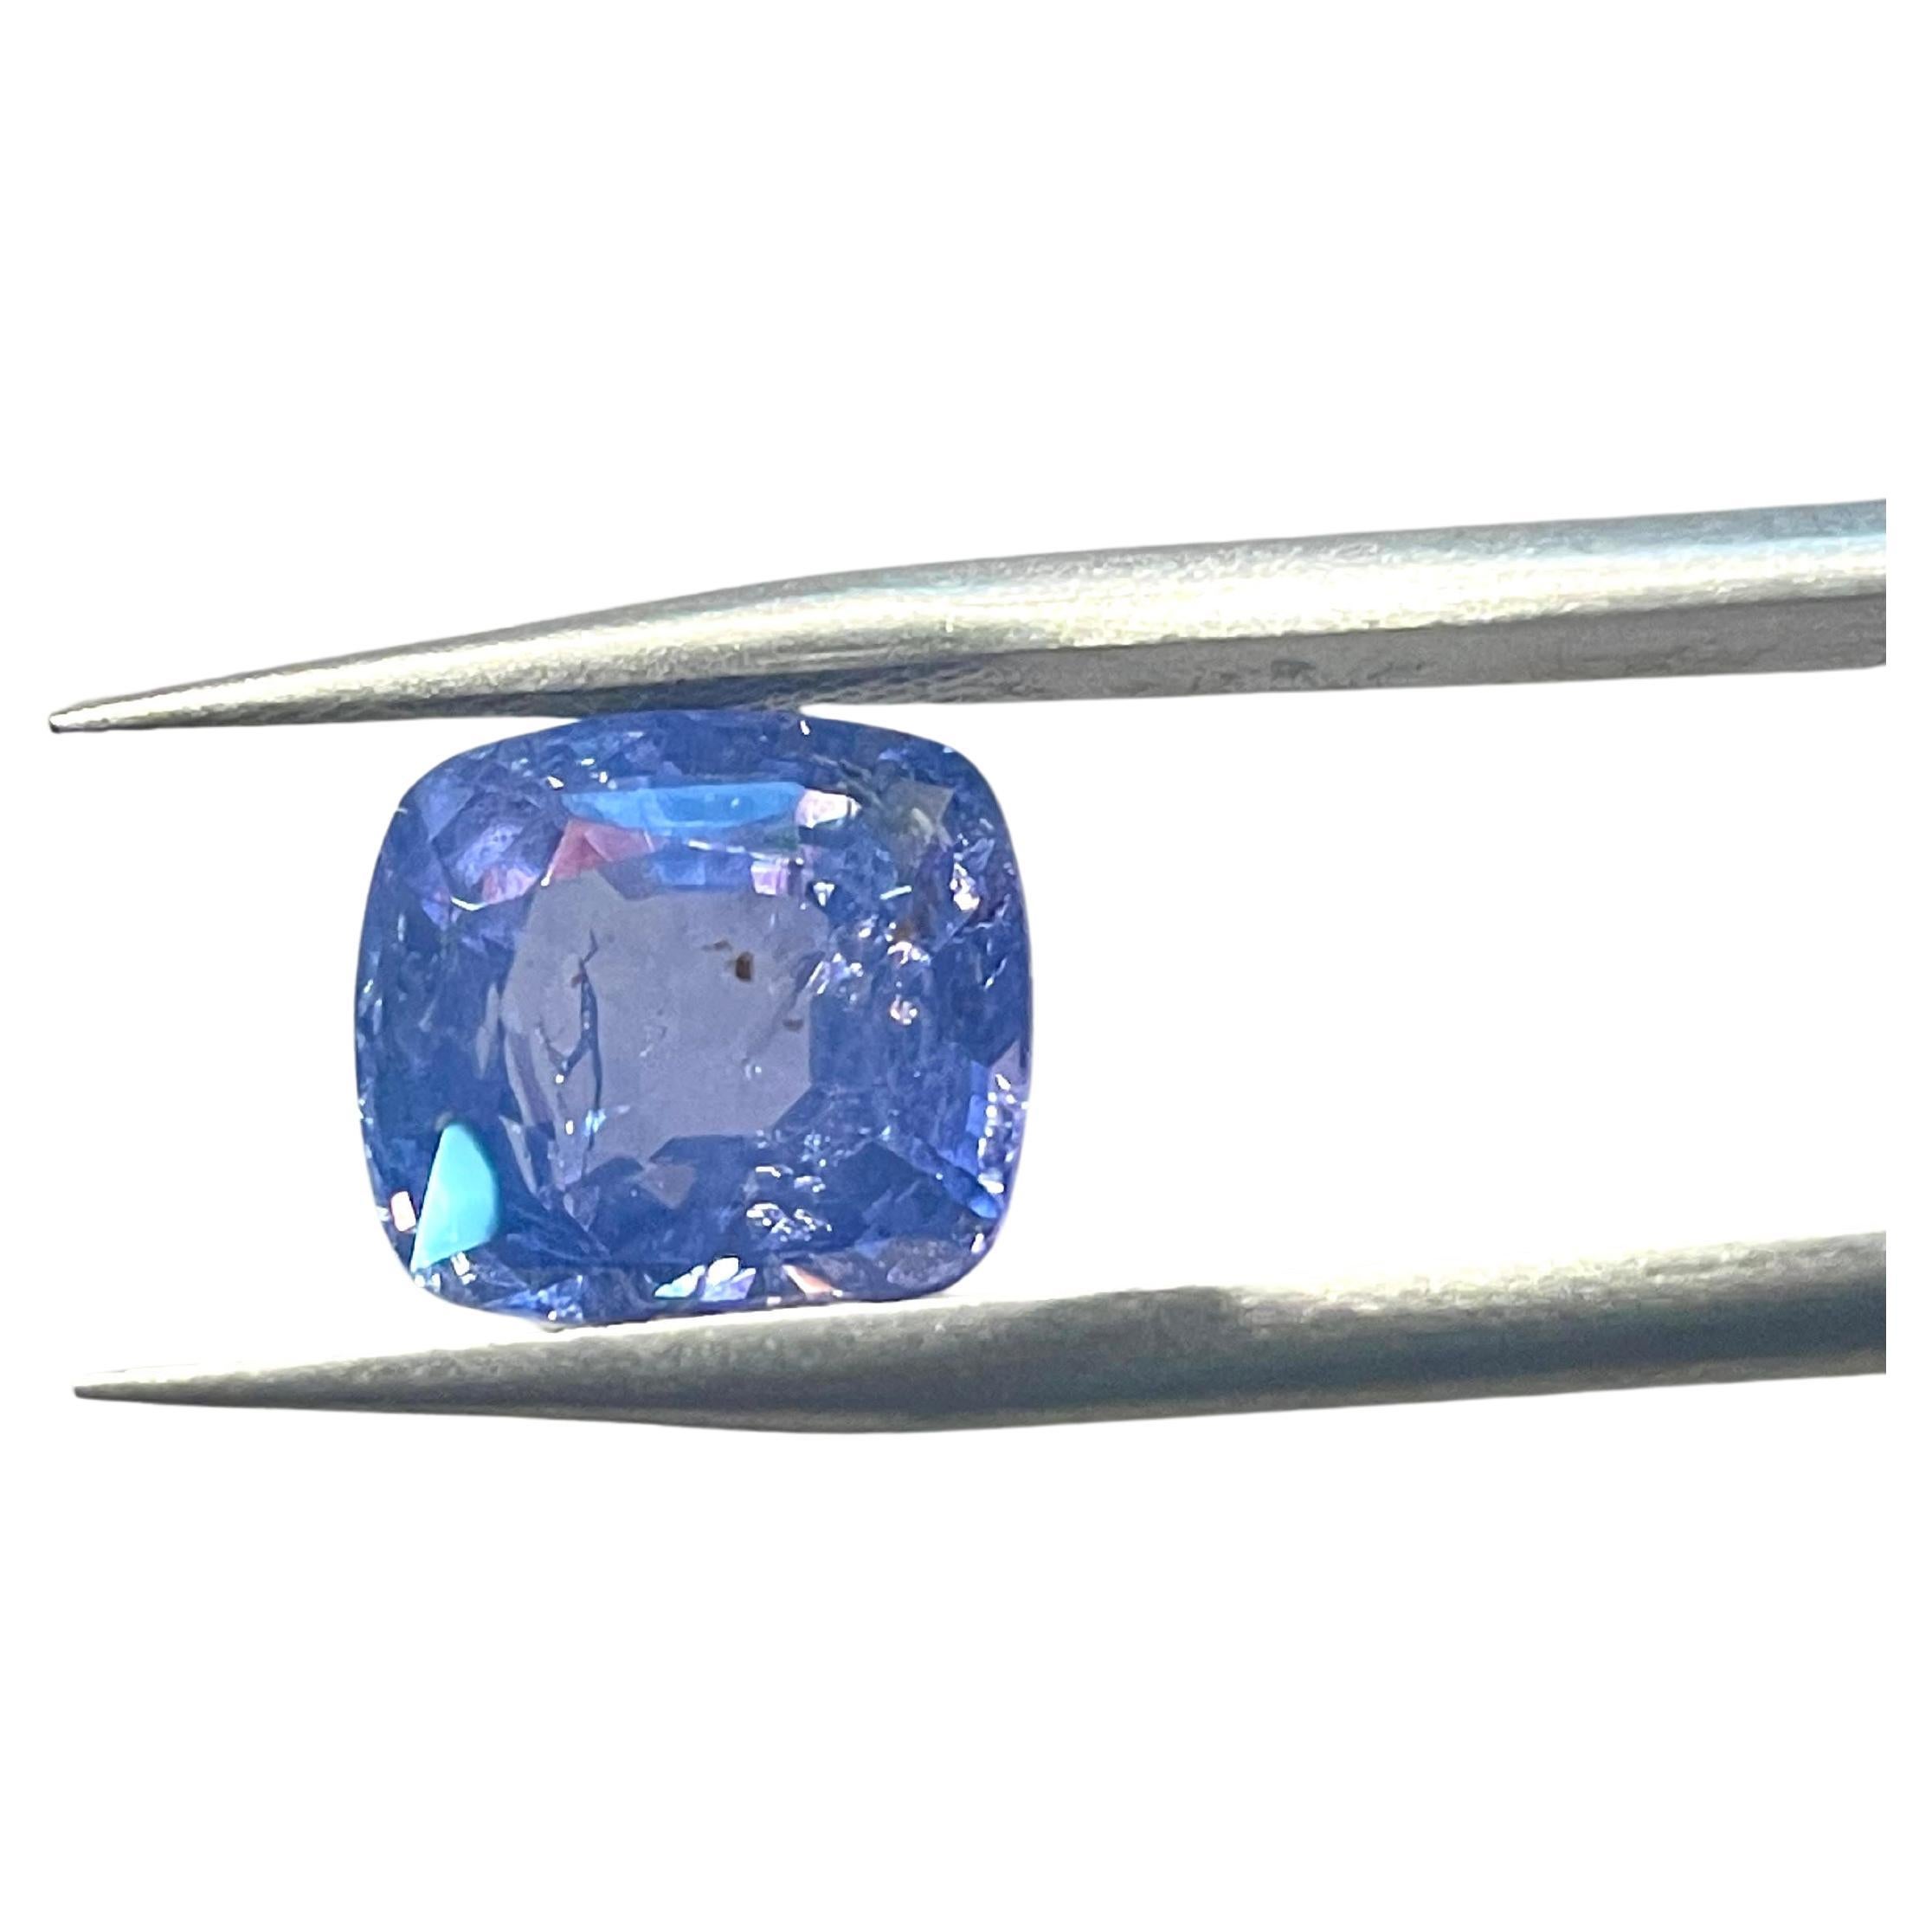 https://a.1stdibscdn.com/grs-swiss-lab-certified-543-carat-blue-sapphire-burma-unheat-for-sale/j_37852/j_204009621695102895477/j_20400962_1695102896097_bg_processed.jpg